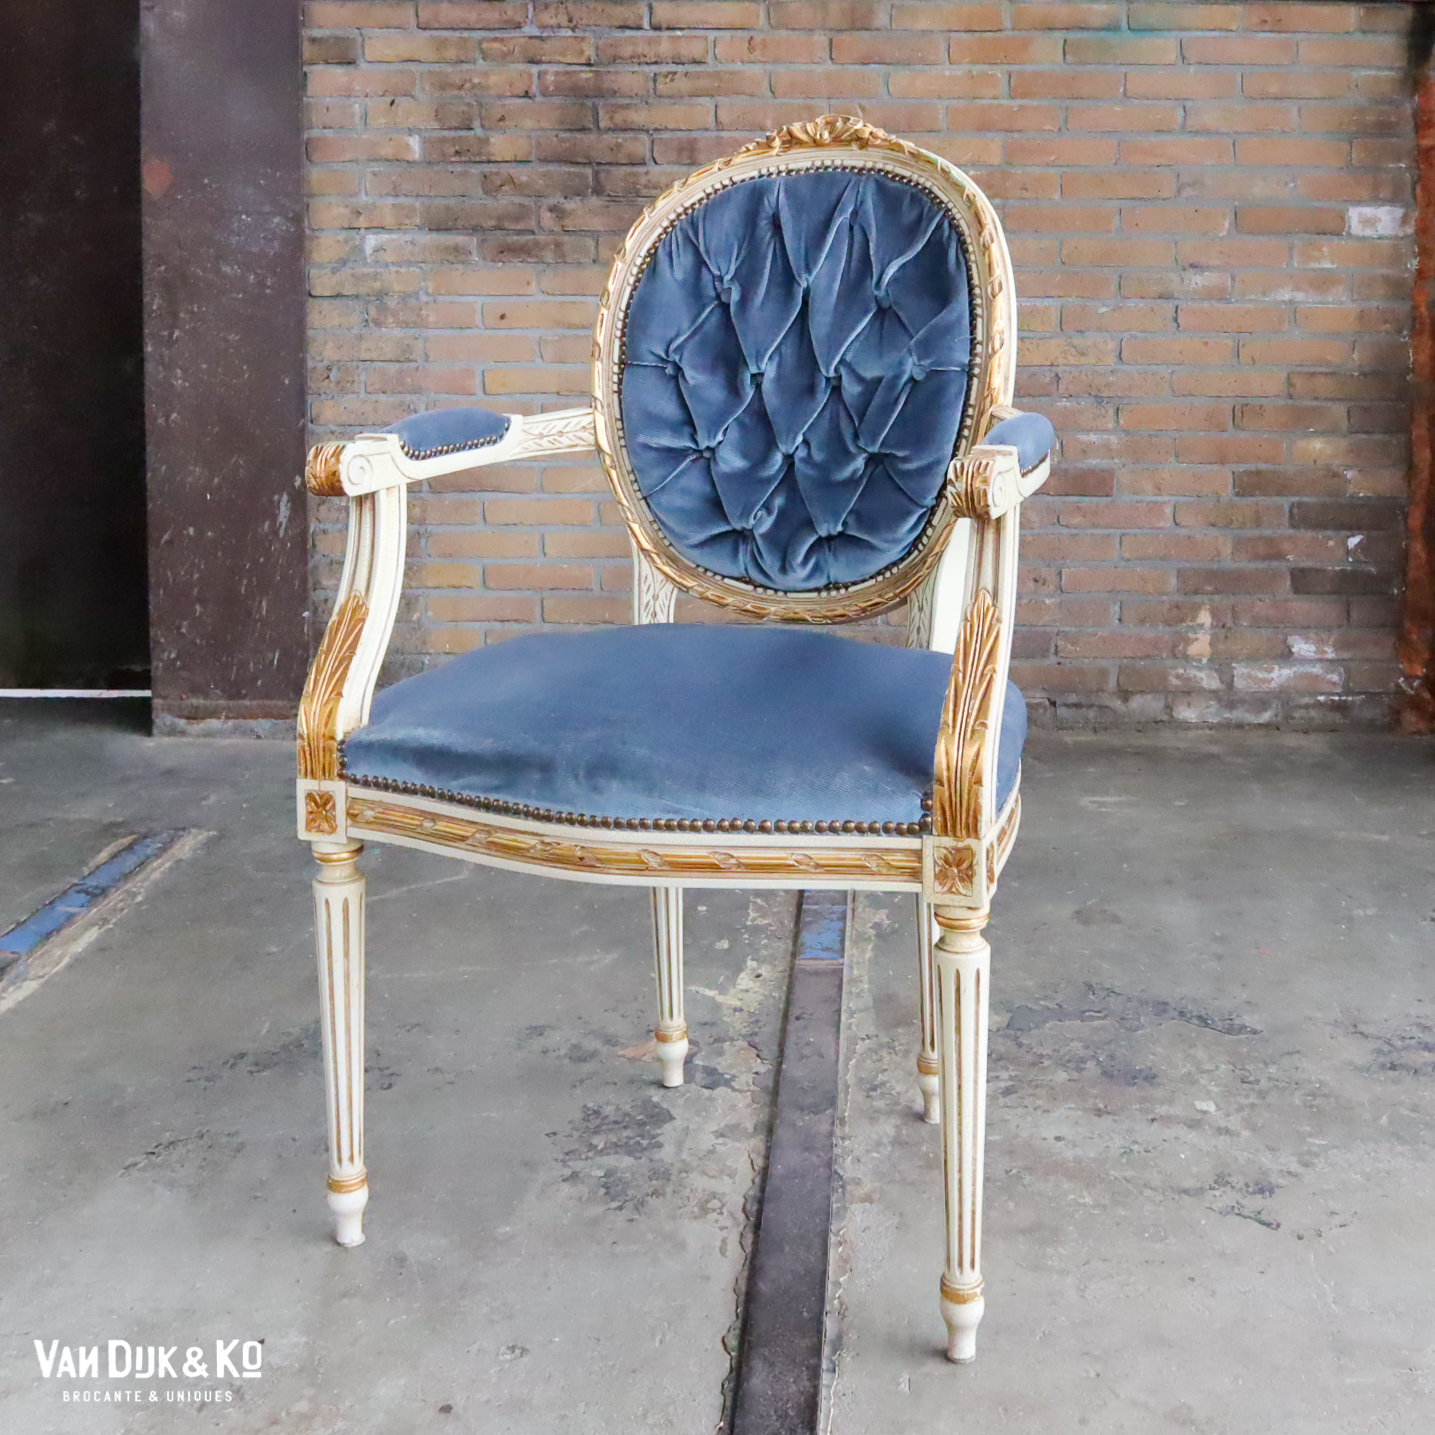 Kruiden Yoghurt erts Vintage barok stoel » Van Dijk & Ko